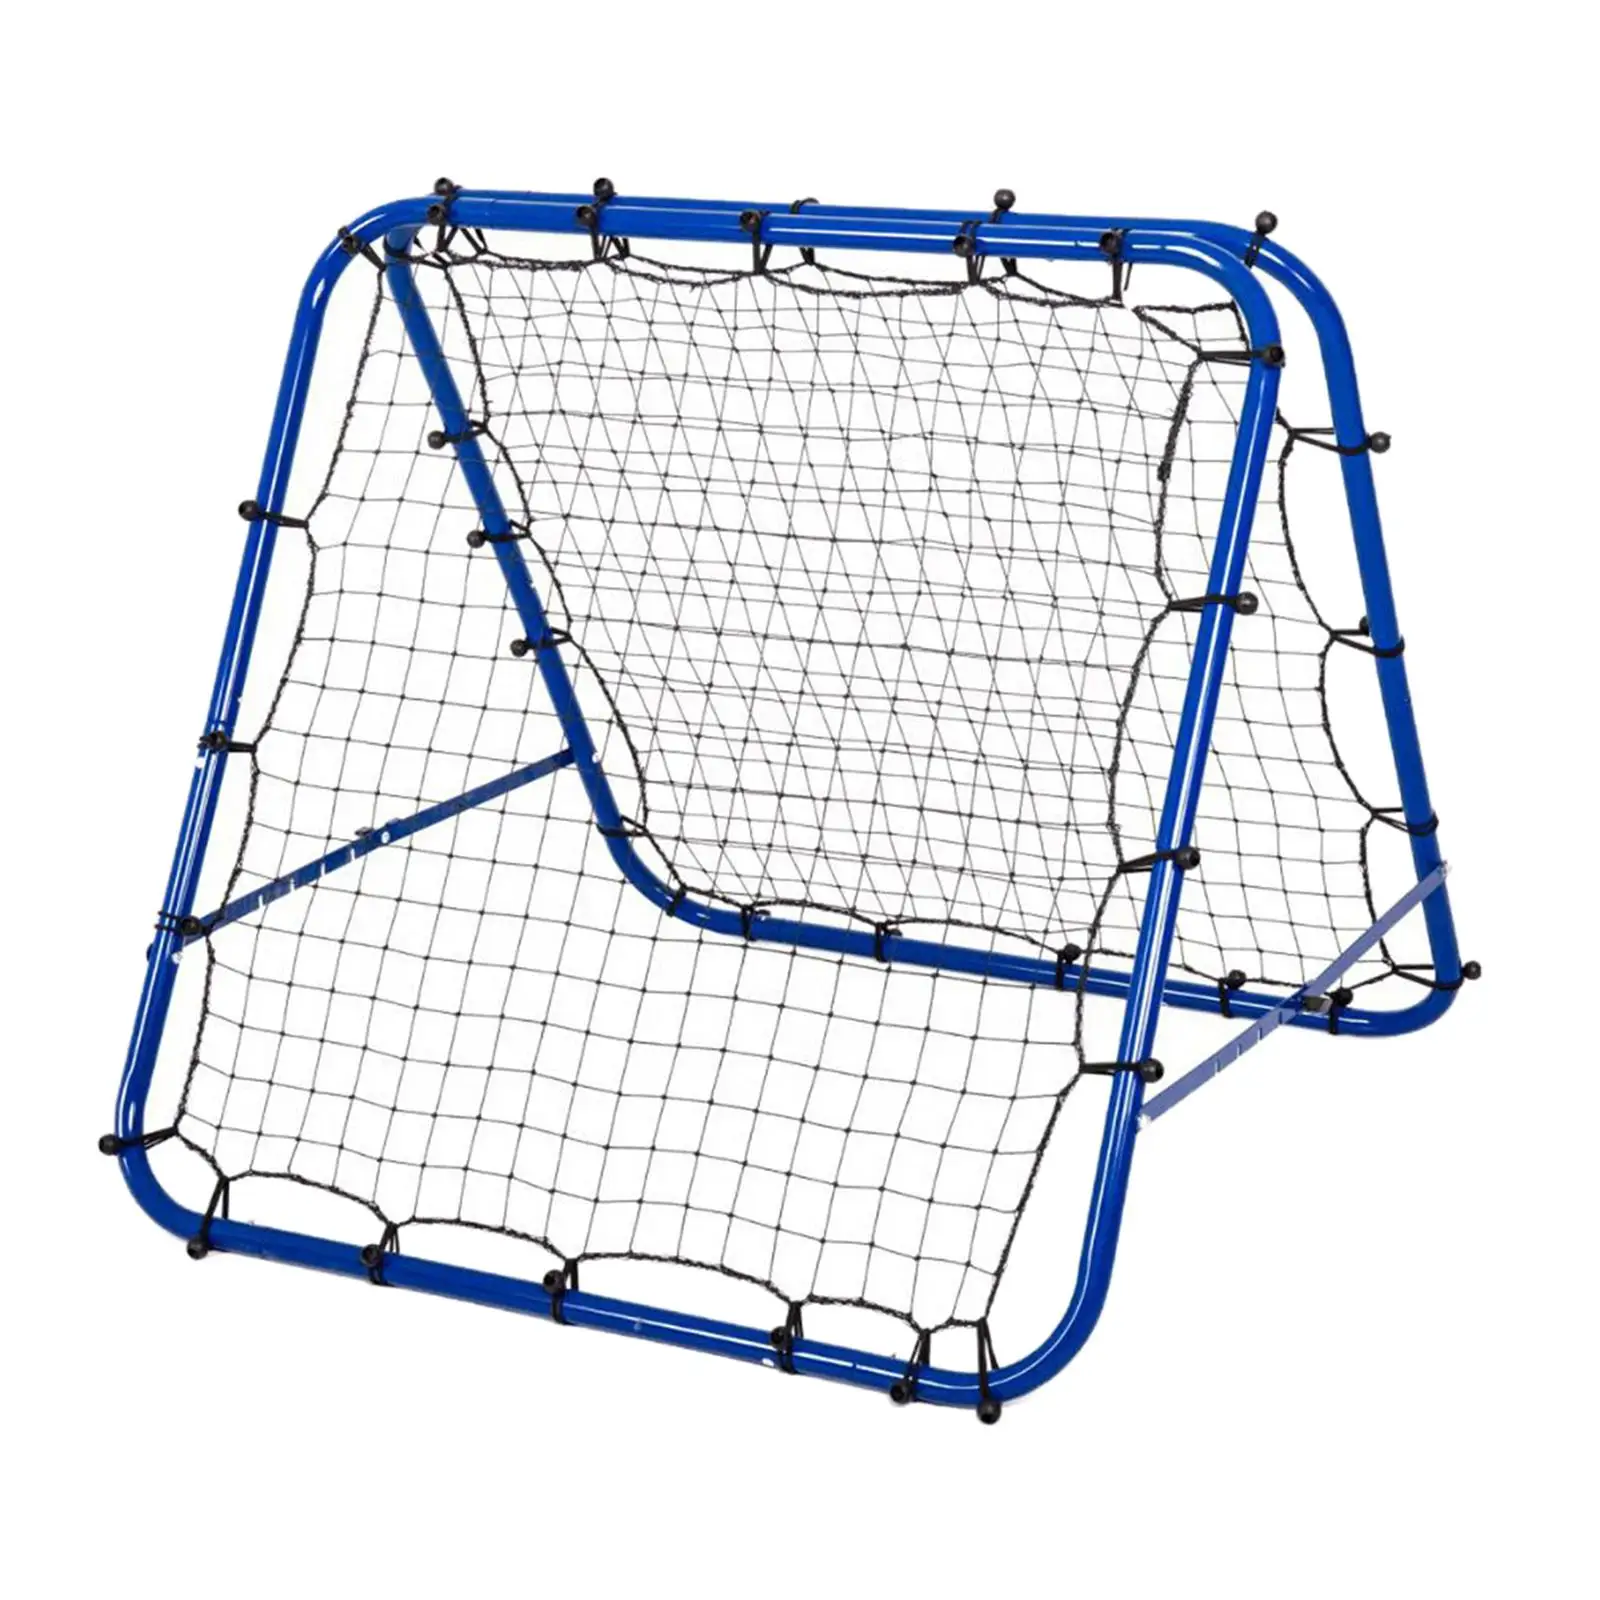 Portable Soccer Goal for Kids and Adults Soccer Rebounder Net Steel Frame